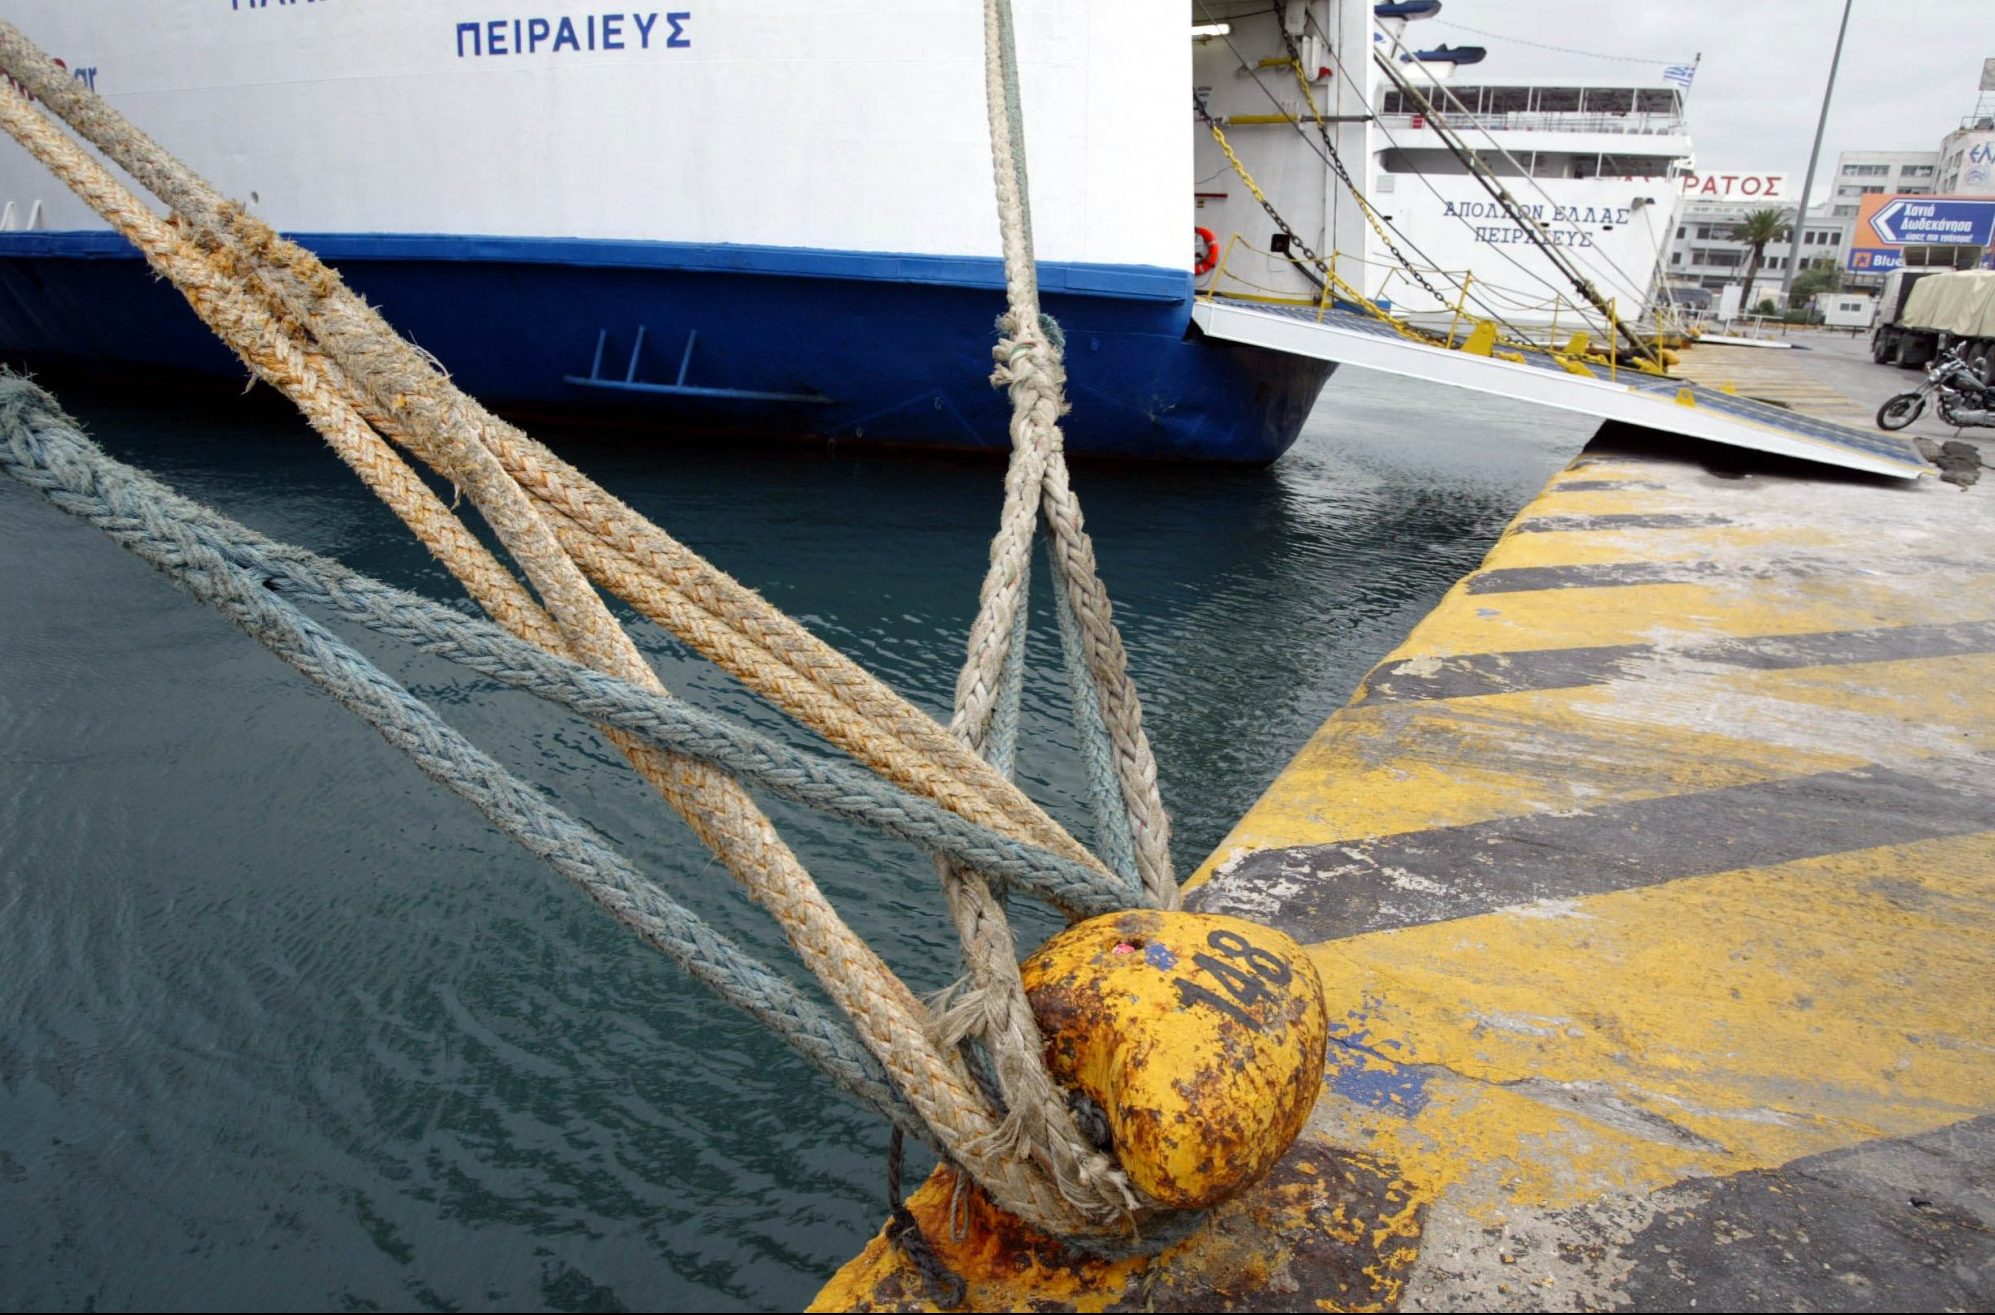 Κακοκαιρία: Δεμένα τα πλοία στα λιμάνια - Απαγορευτικό απόπλου λόγω των θυελλωδών ανέμων